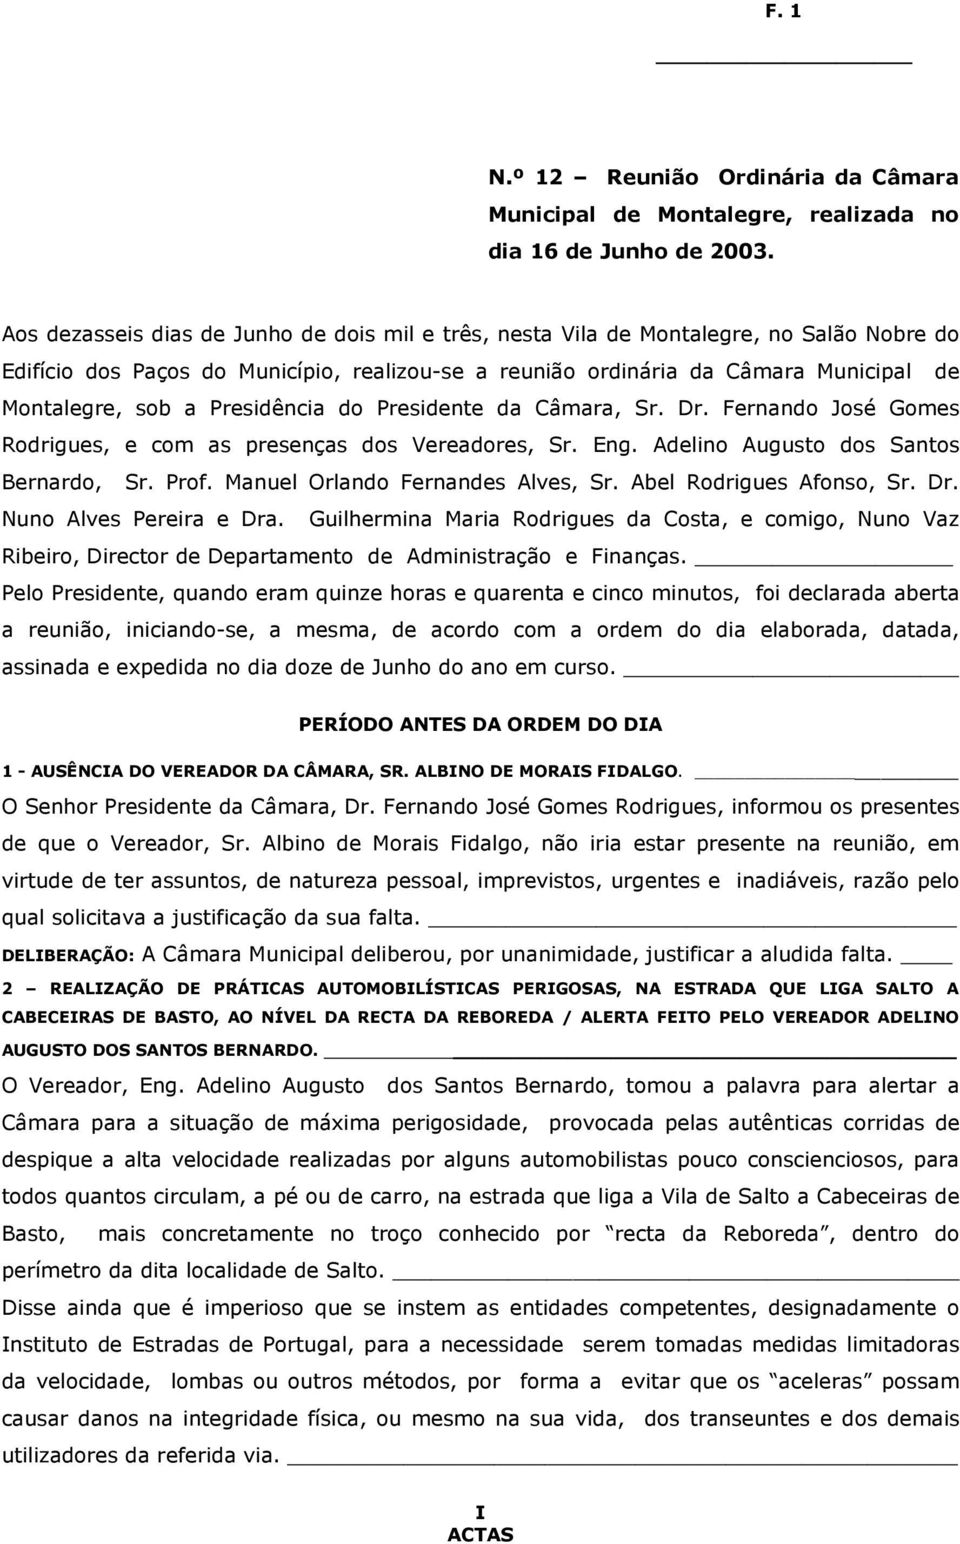 Presidência do Presidente da Câmara, Sr. Dr. Fernando José Gomes Rodrigues, e com as presenças dos Vereadores, Sr. Eng. Adelino Augusto dos Santos Bernardo, Sr. Prof.